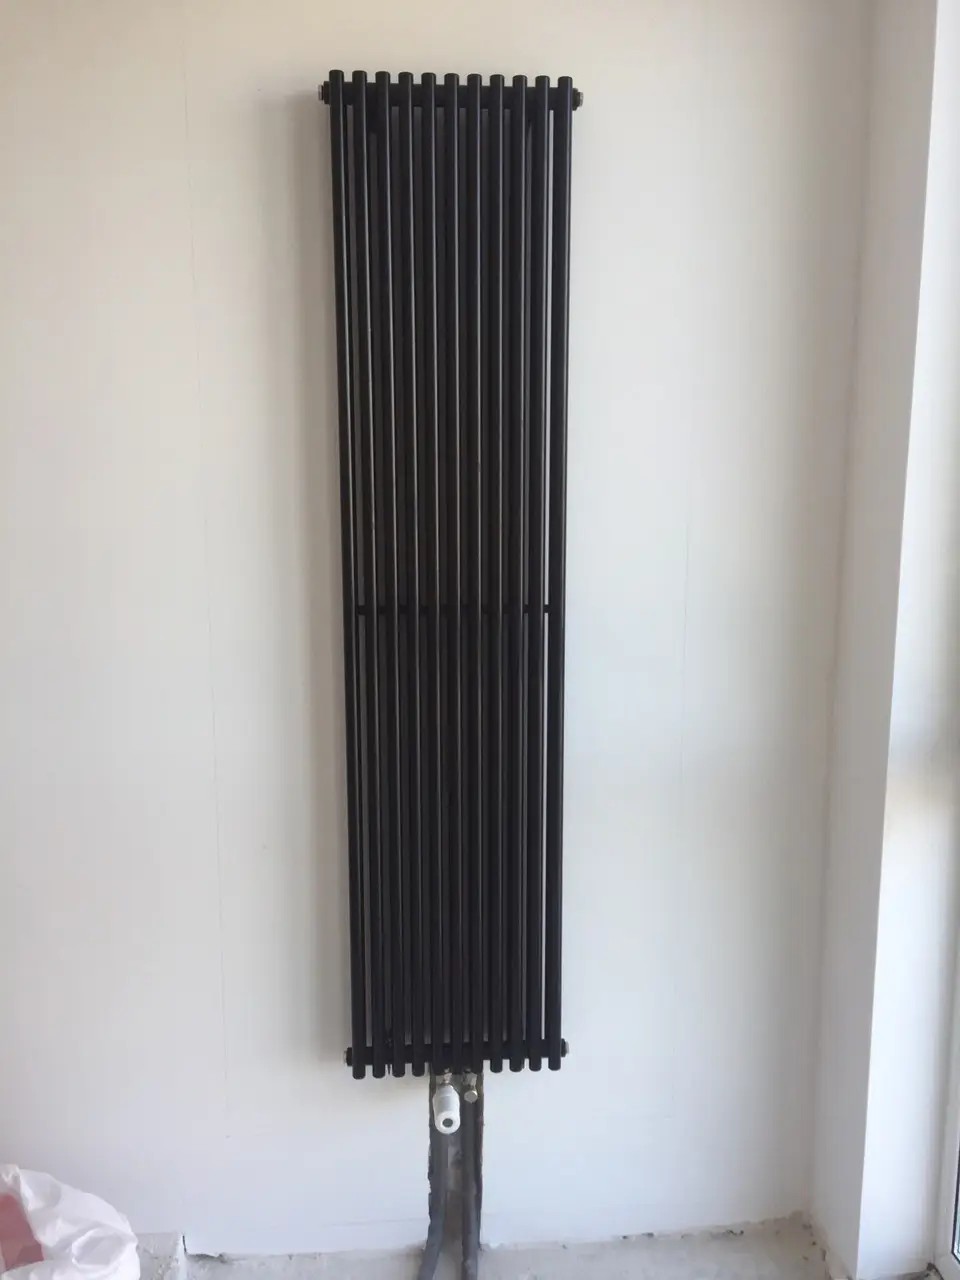 Радиатор для отопления Betatherm PRAKTIKUM 1 H-1800мм, L-387мм (PV 1180/10 9005М 99) отзывы - изображения 5